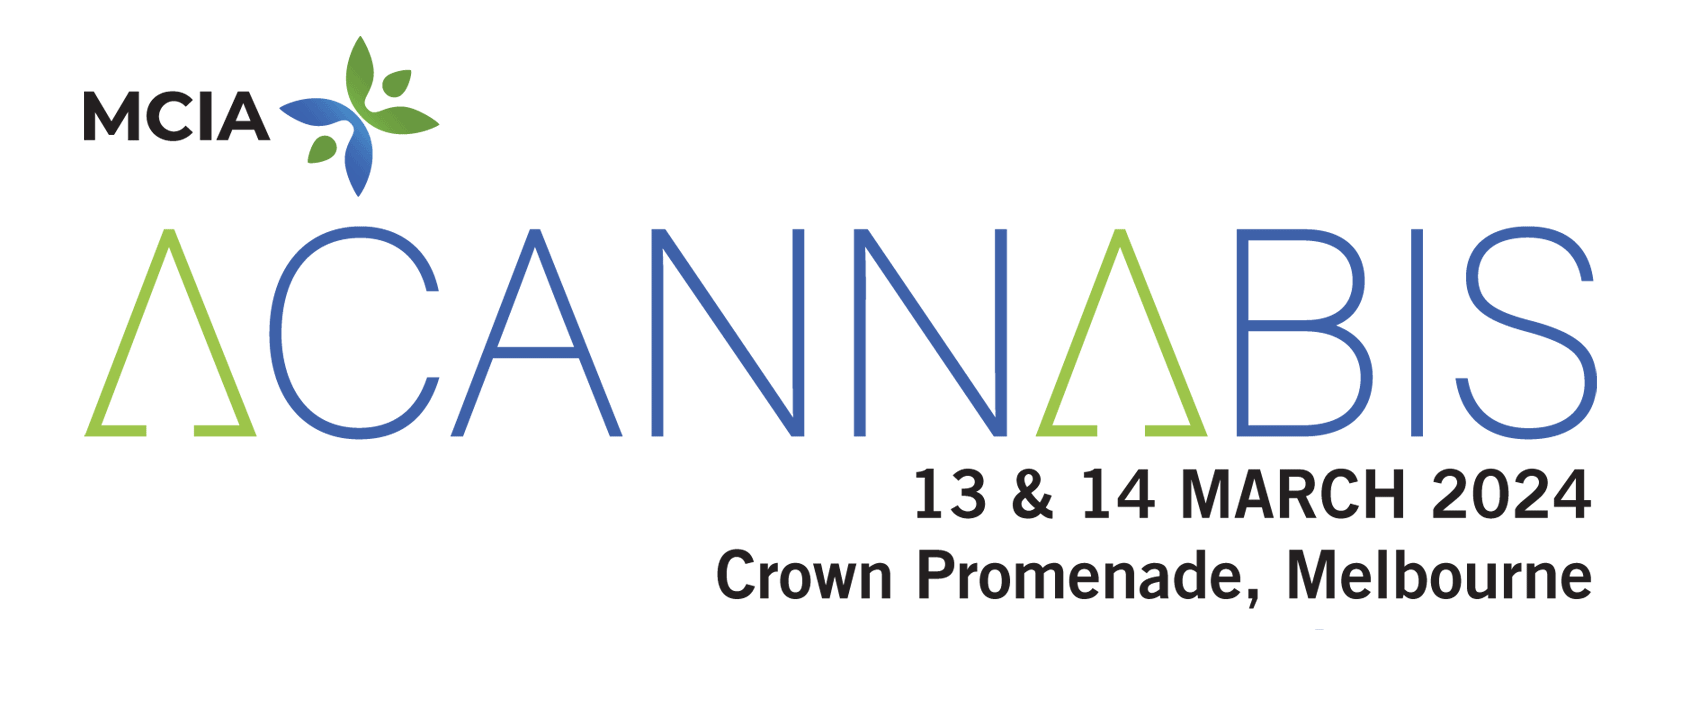 MCIA presents ACannabis 2024 and ACannabis 2024 Industry Dinner